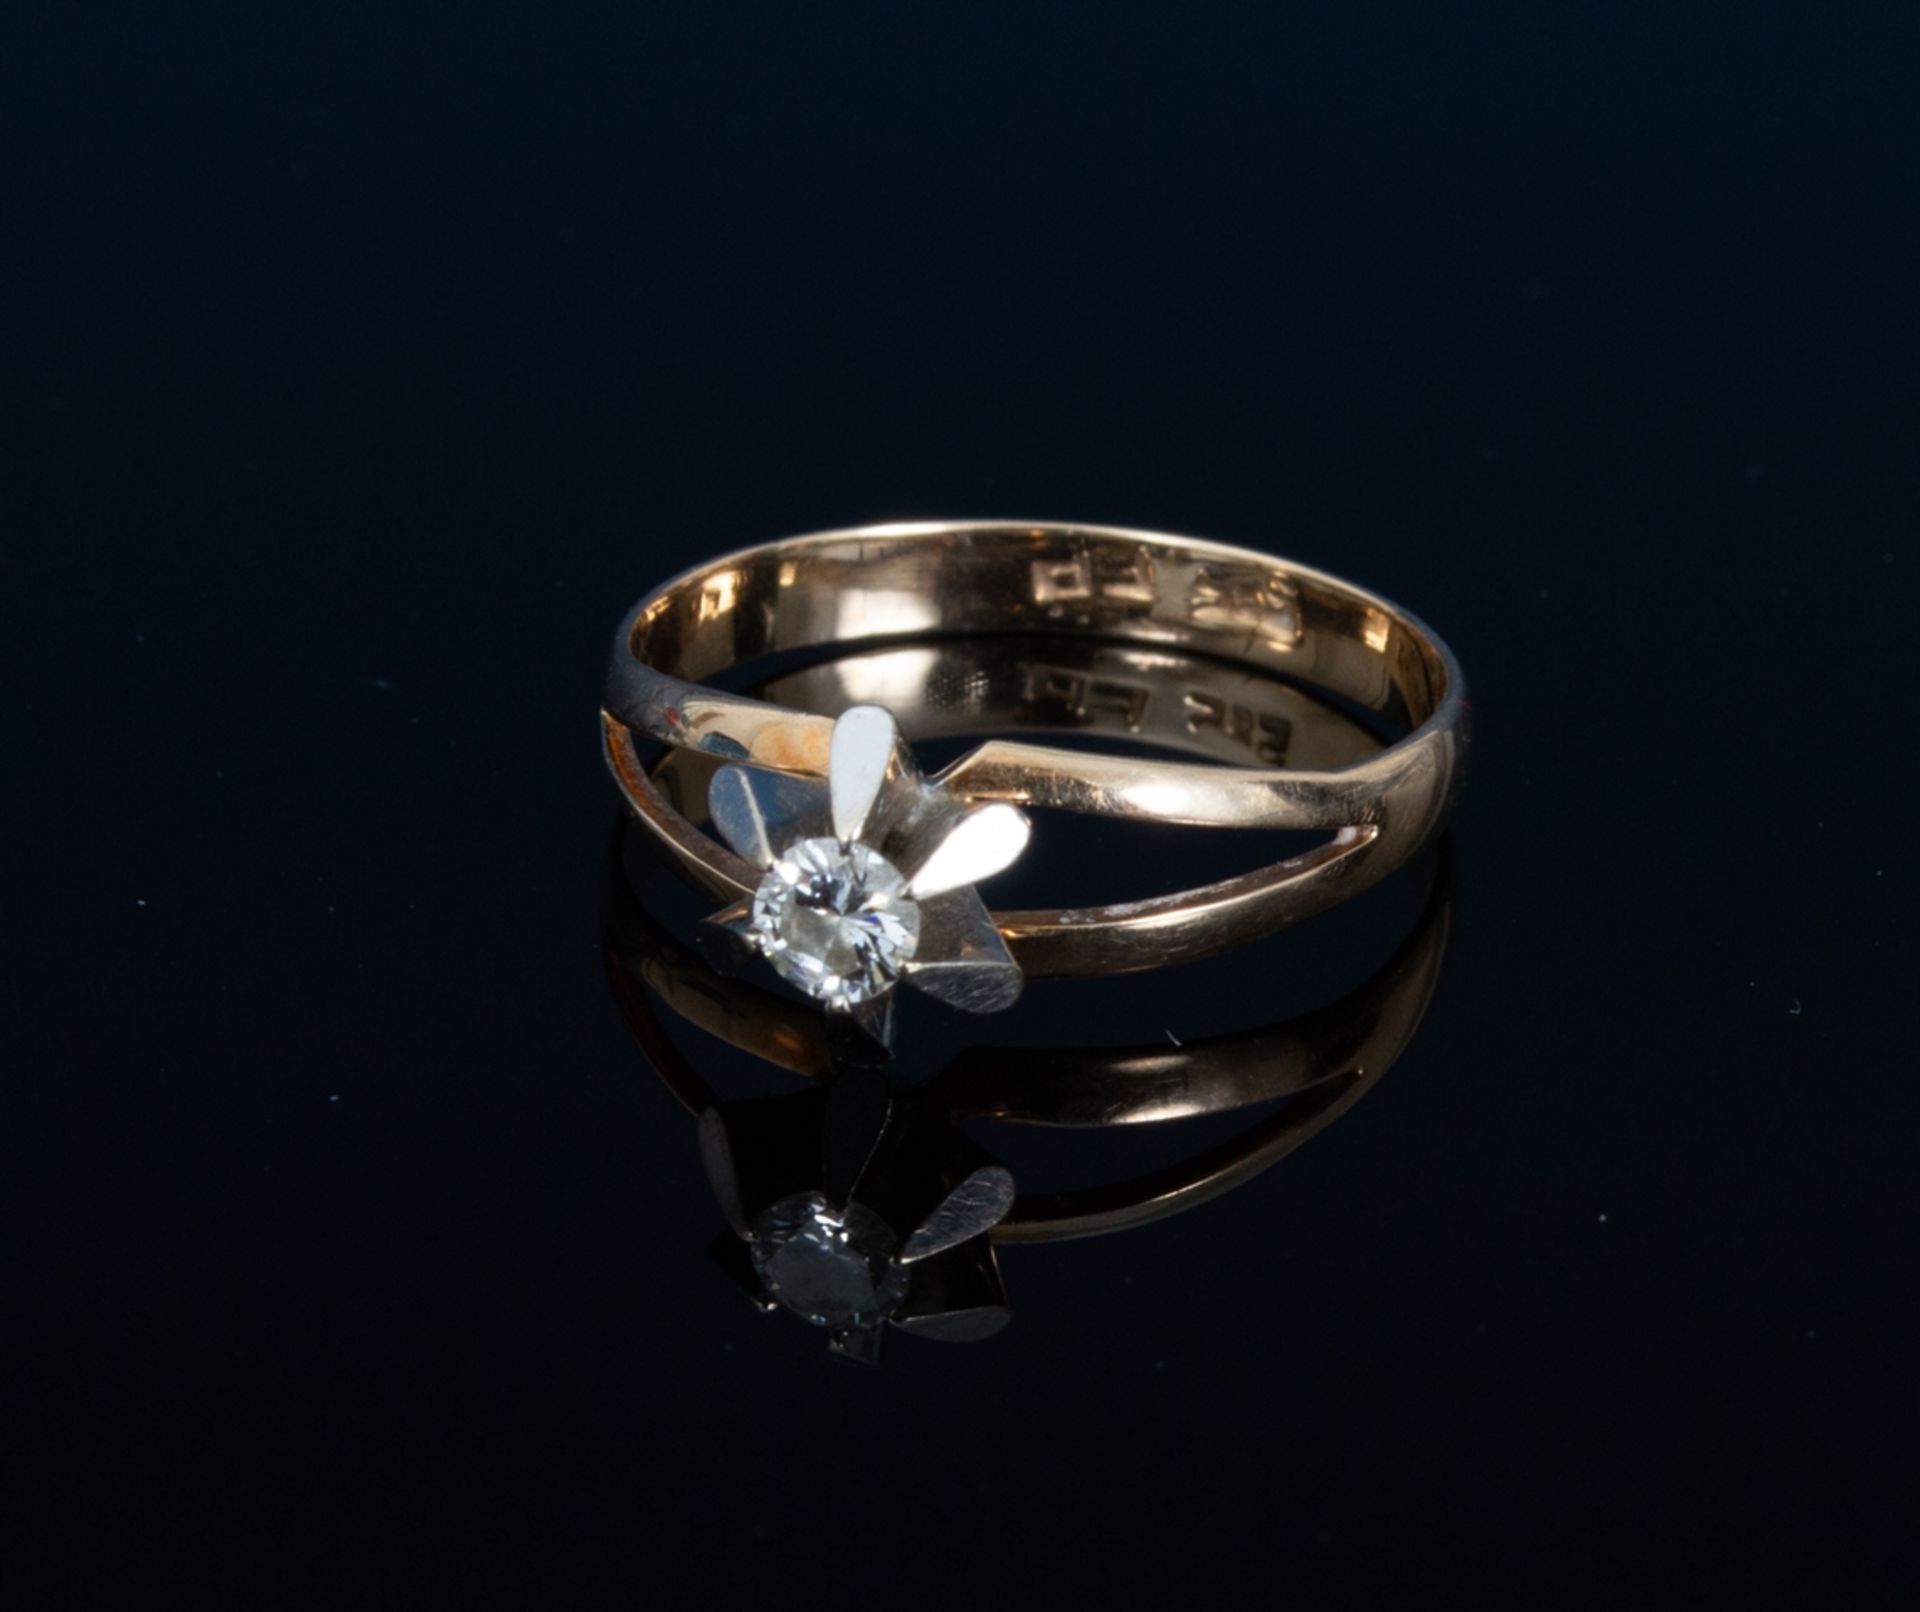 Diamantring. 585er Rosegold mit Diamant in weiß von ca. 0,16 ct (lt. Ringschiene). - Bild 4 aus 4